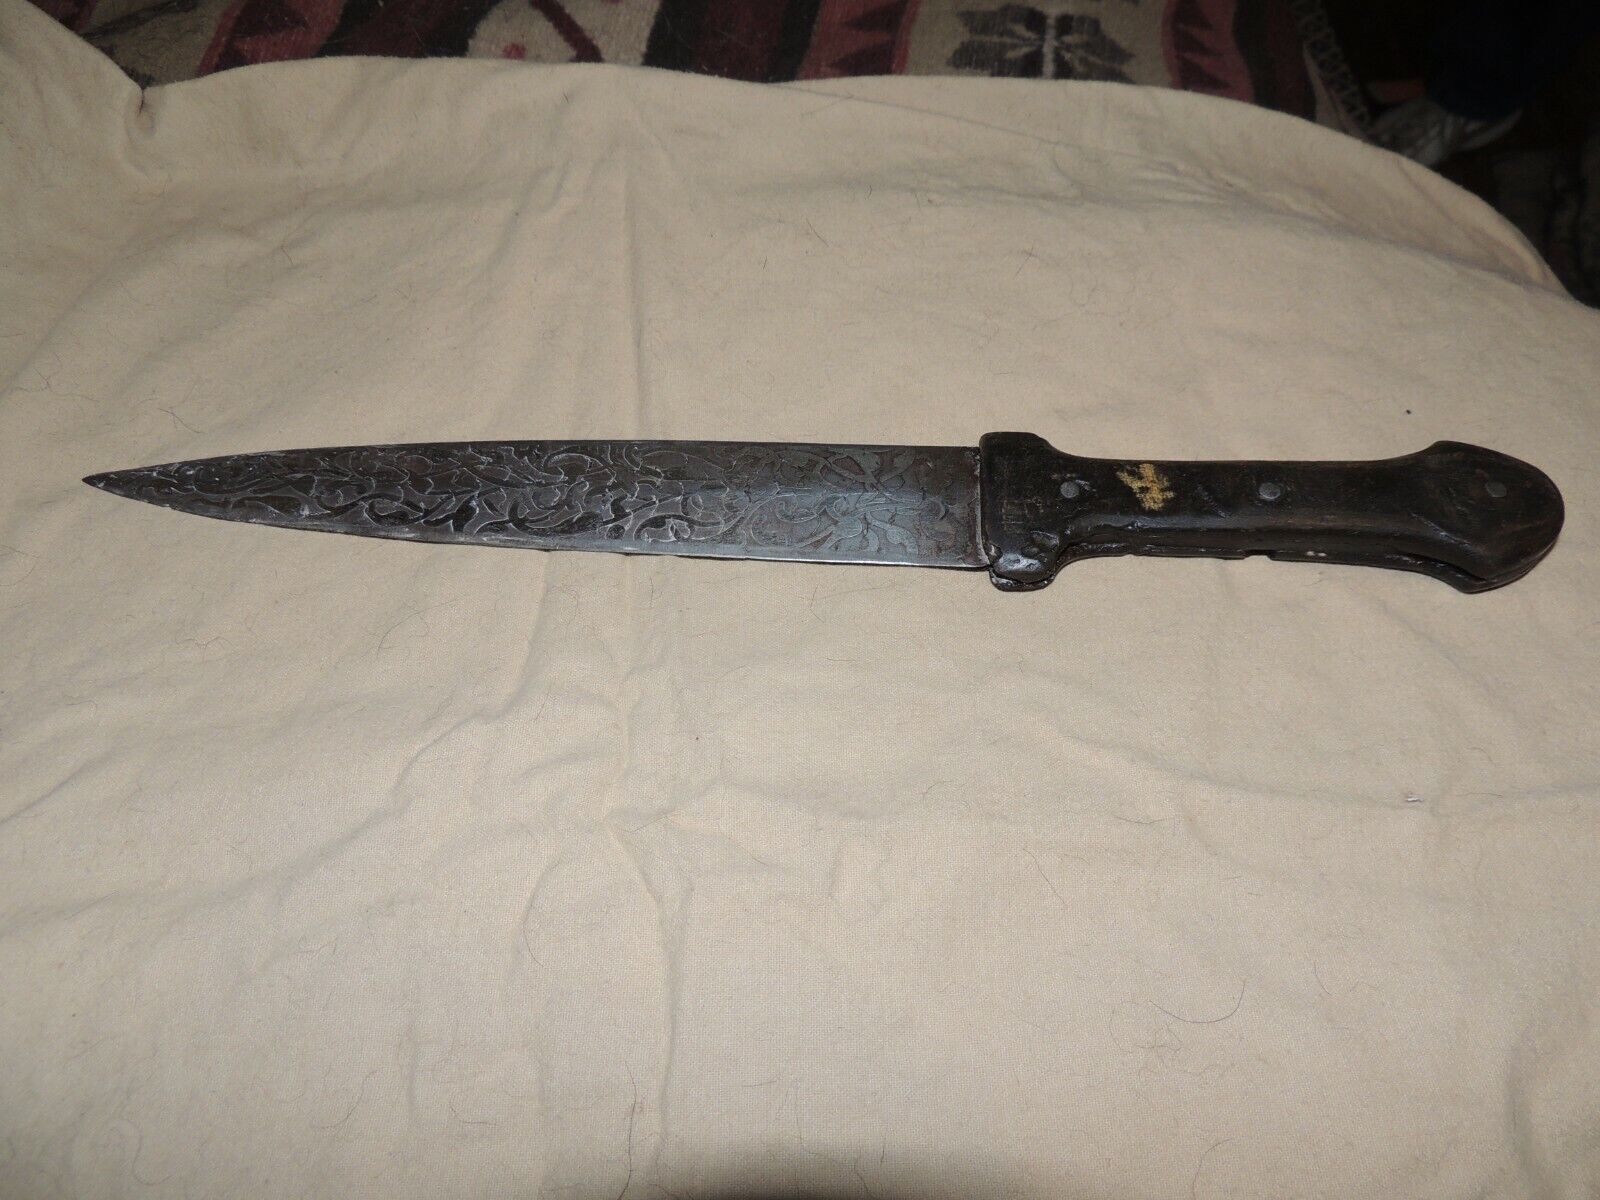  1930 Cyprus dagger